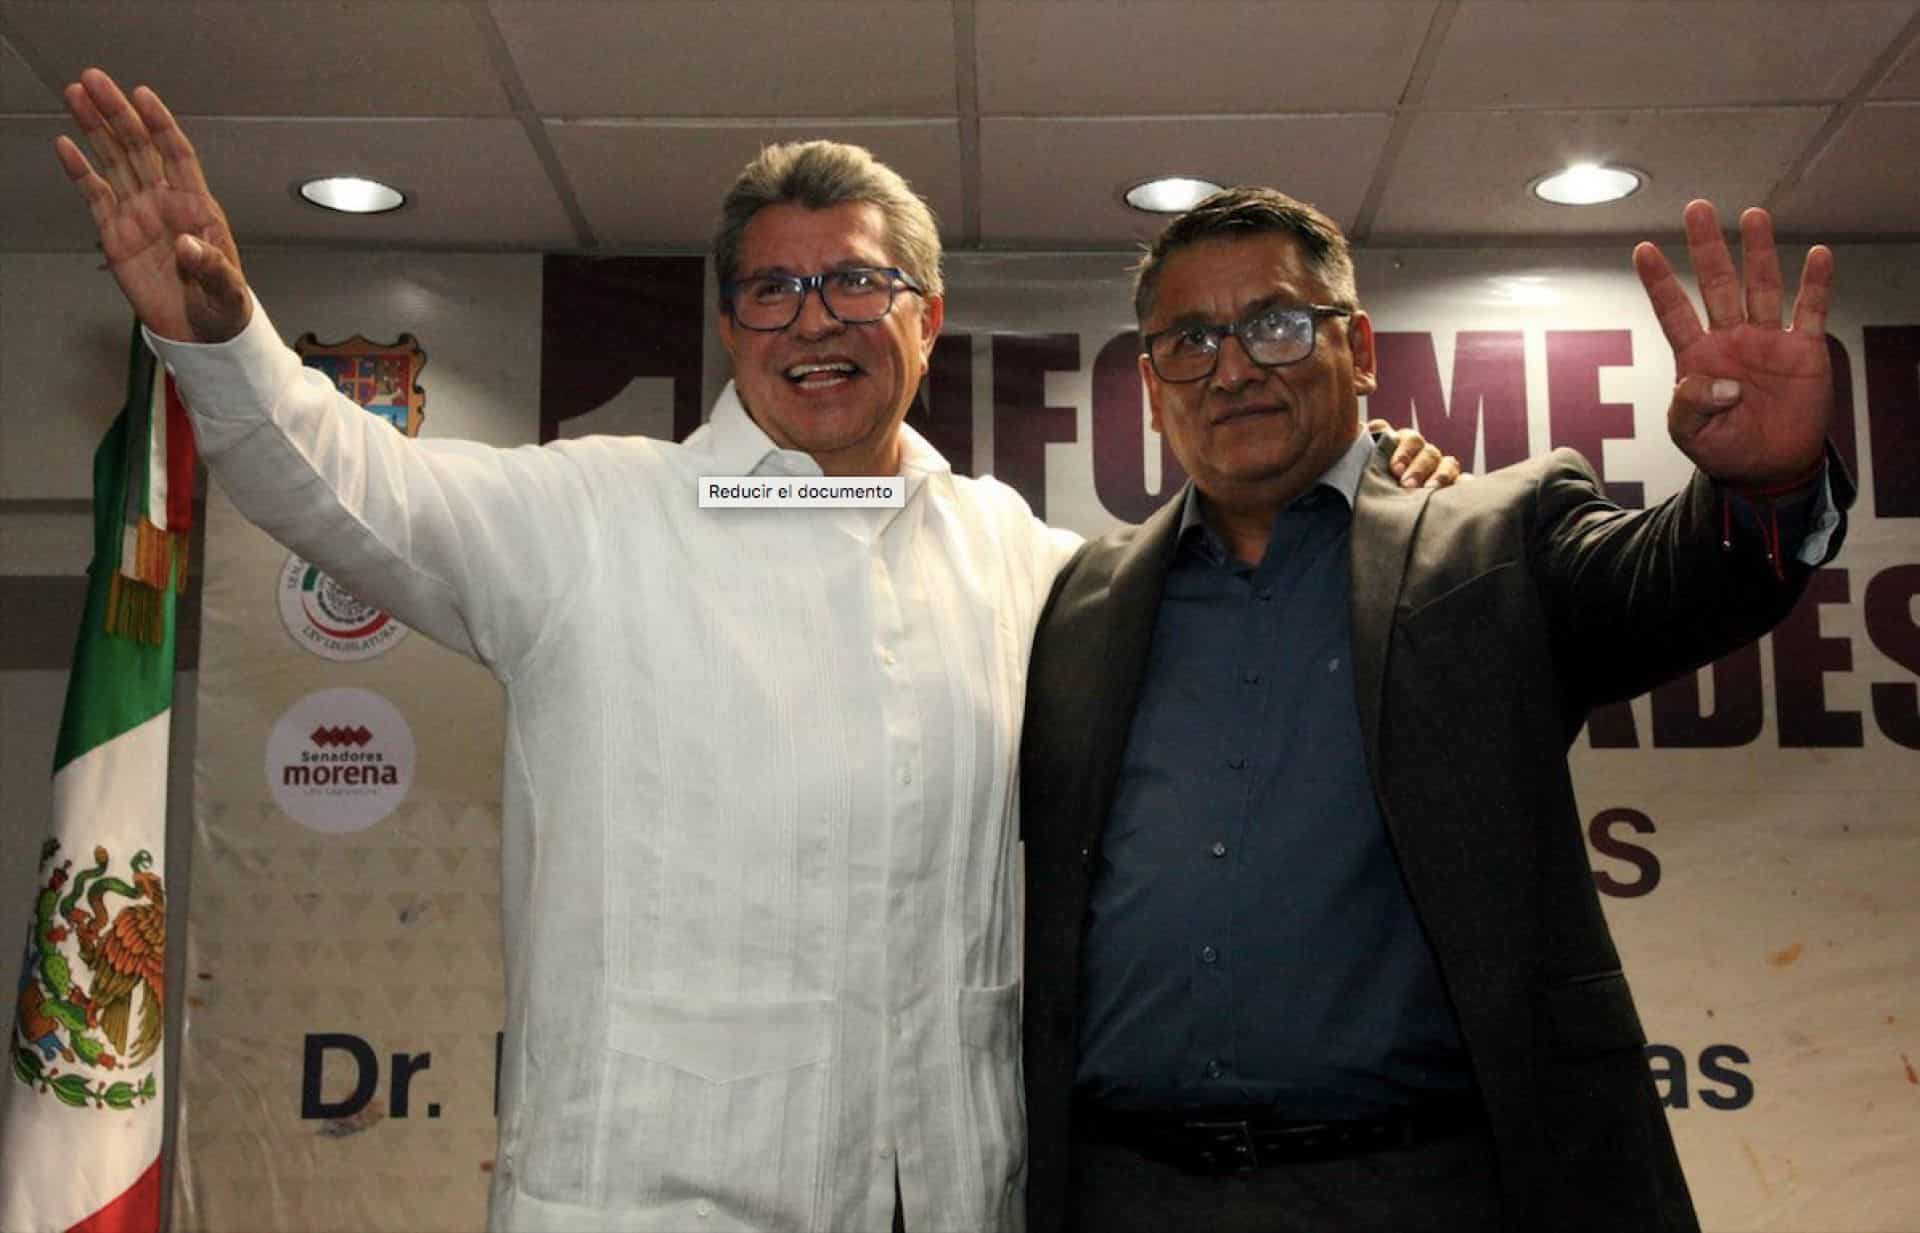 Senado emitirá convocatoria para elección extraordinaria en vacante que dejó Faustino López